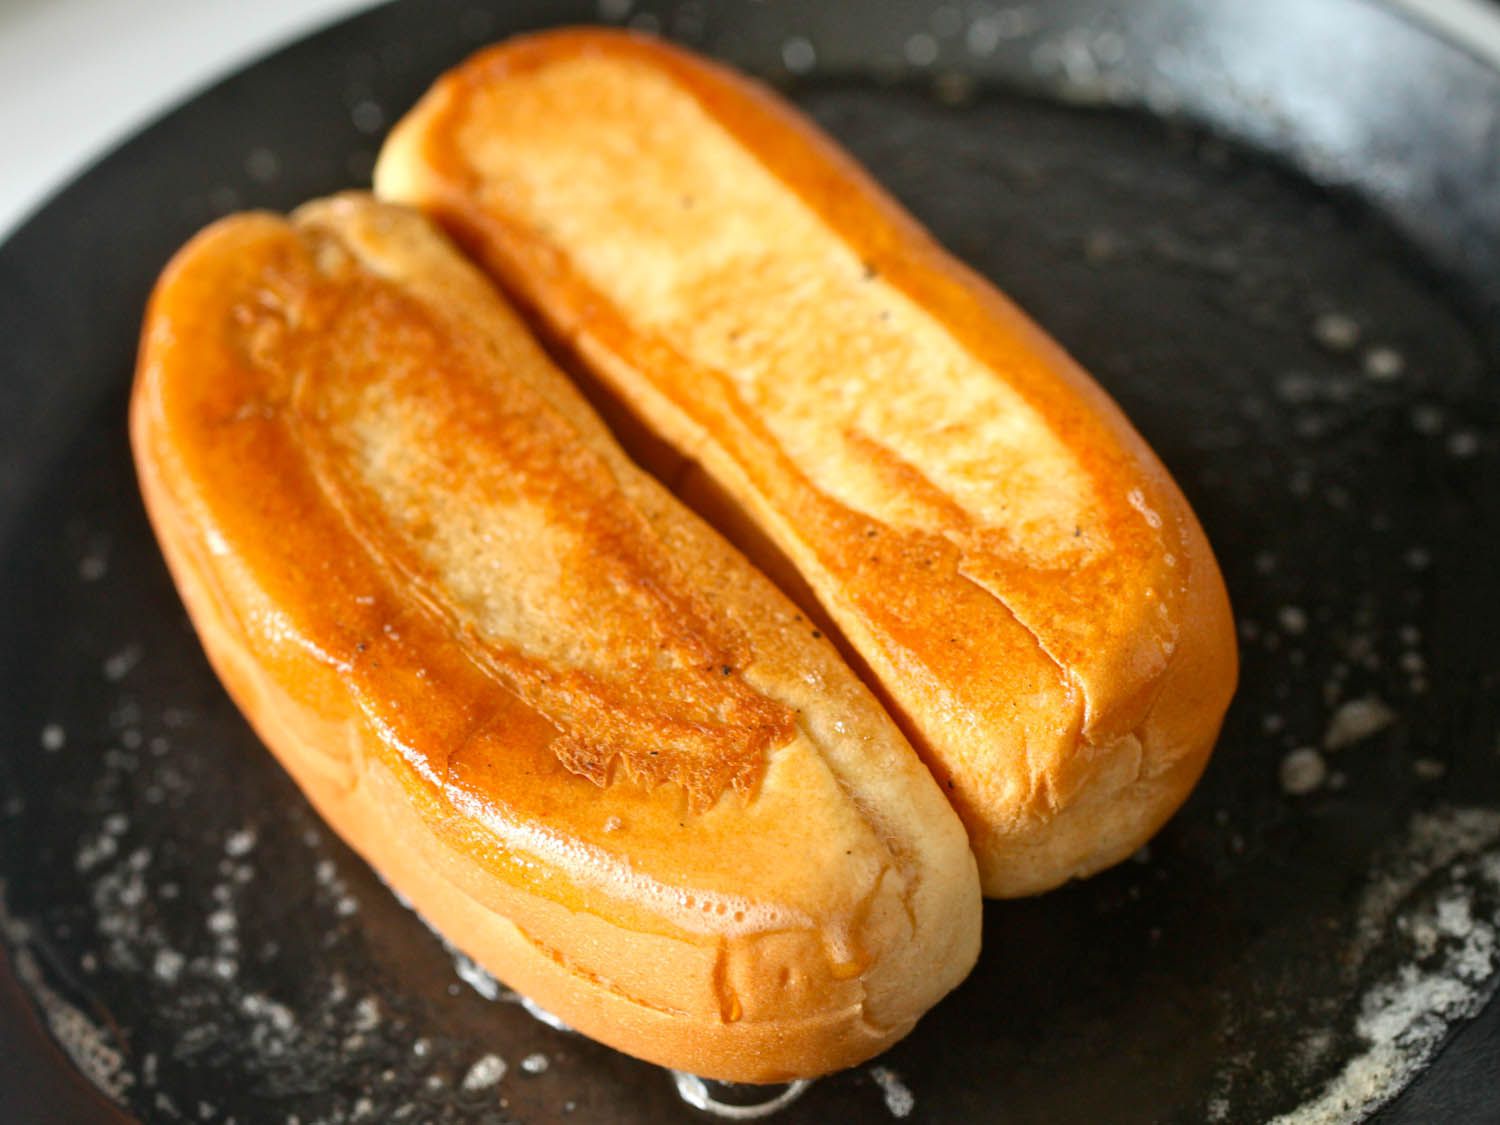 在涂满黄油的煎锅里烤分顶热狗面包。